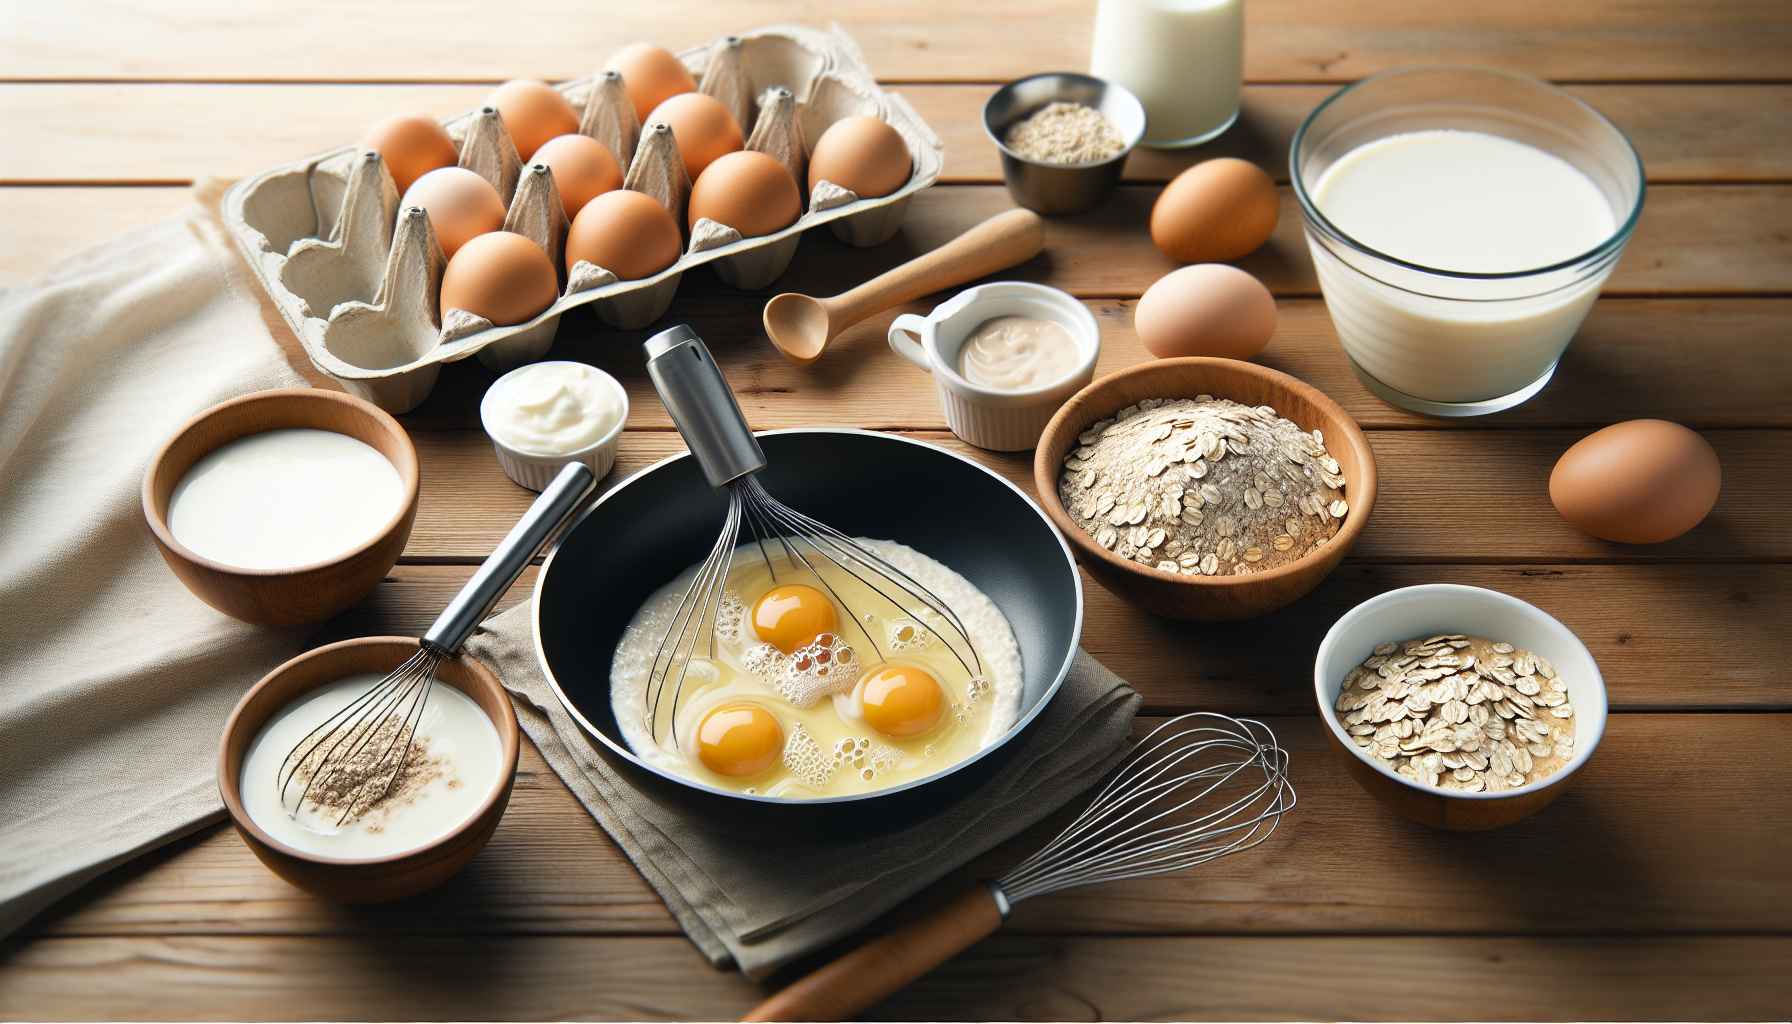 Receita Saudável e Rápida: Ovos com Iogurte e Aveia